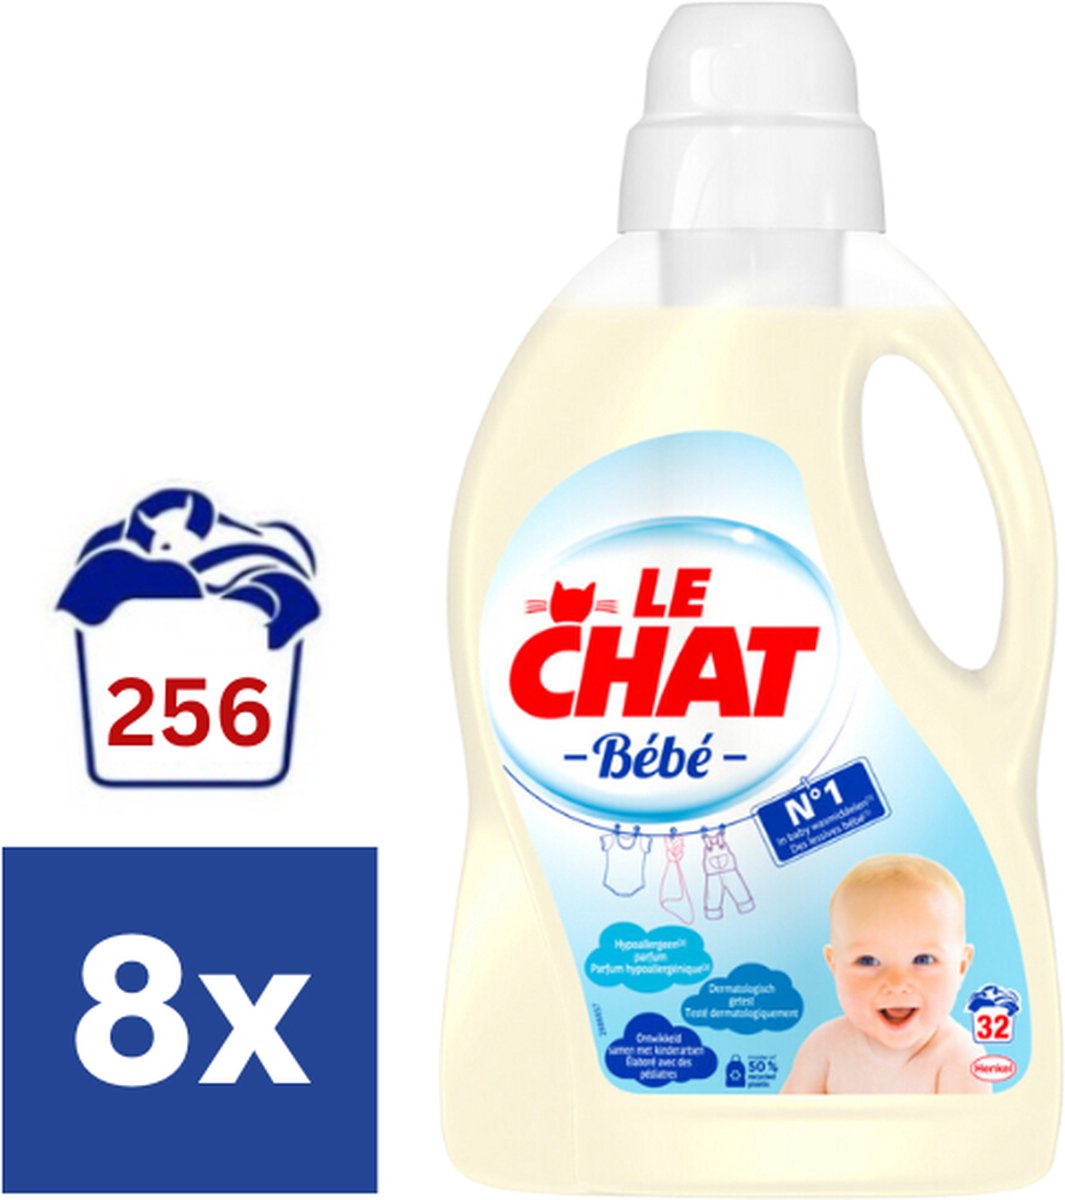 Promo Lessive liquide le chat bébé chez Carrefour